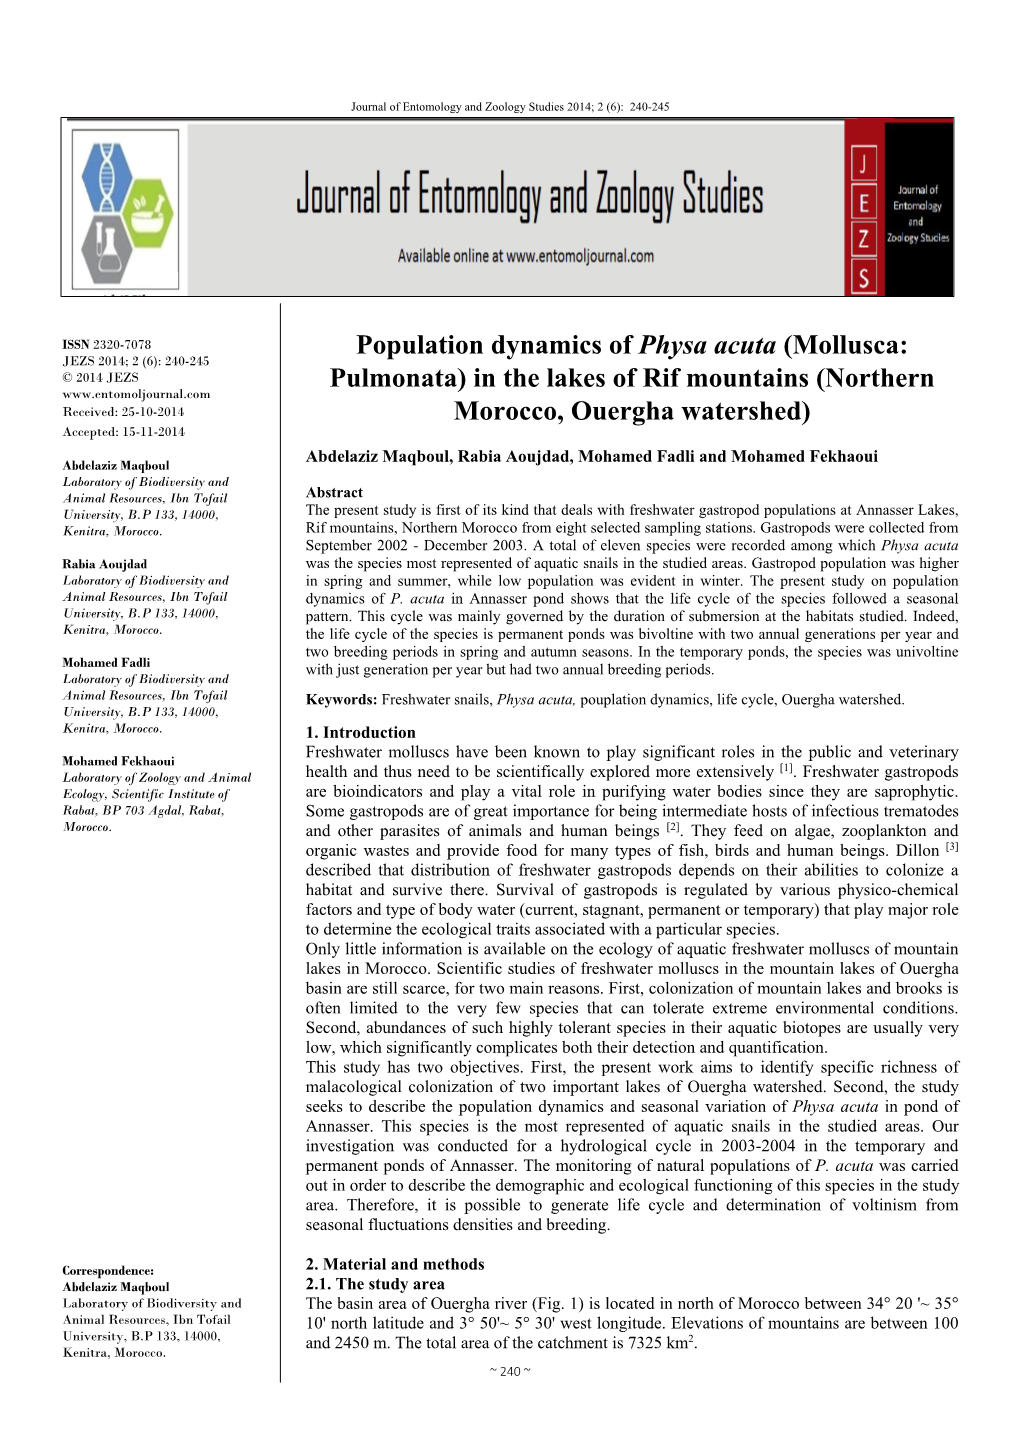 Population Dynamics of Physa Acuta (Mollusca: Pulmonata)